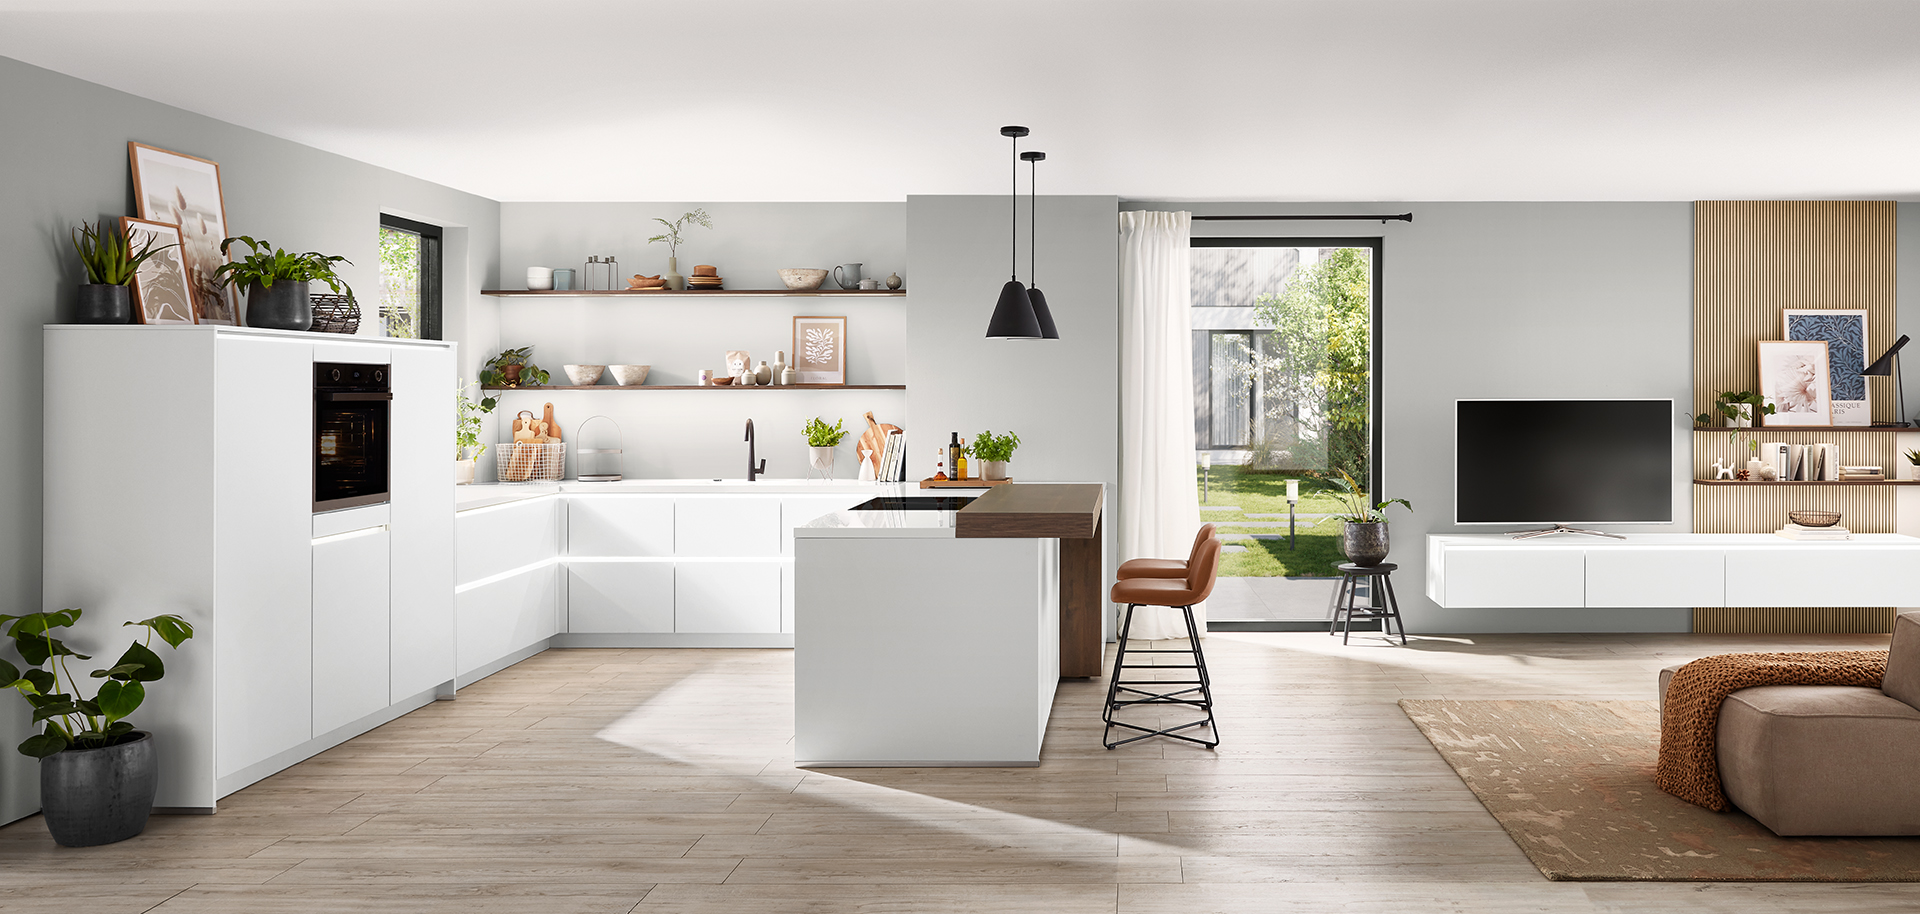 Moderne keuken met witte kasten die overgaat in een chique leefruimte met houten accenten, waarbij naadloos, eigentijds interieurontwerp wordt getoond.